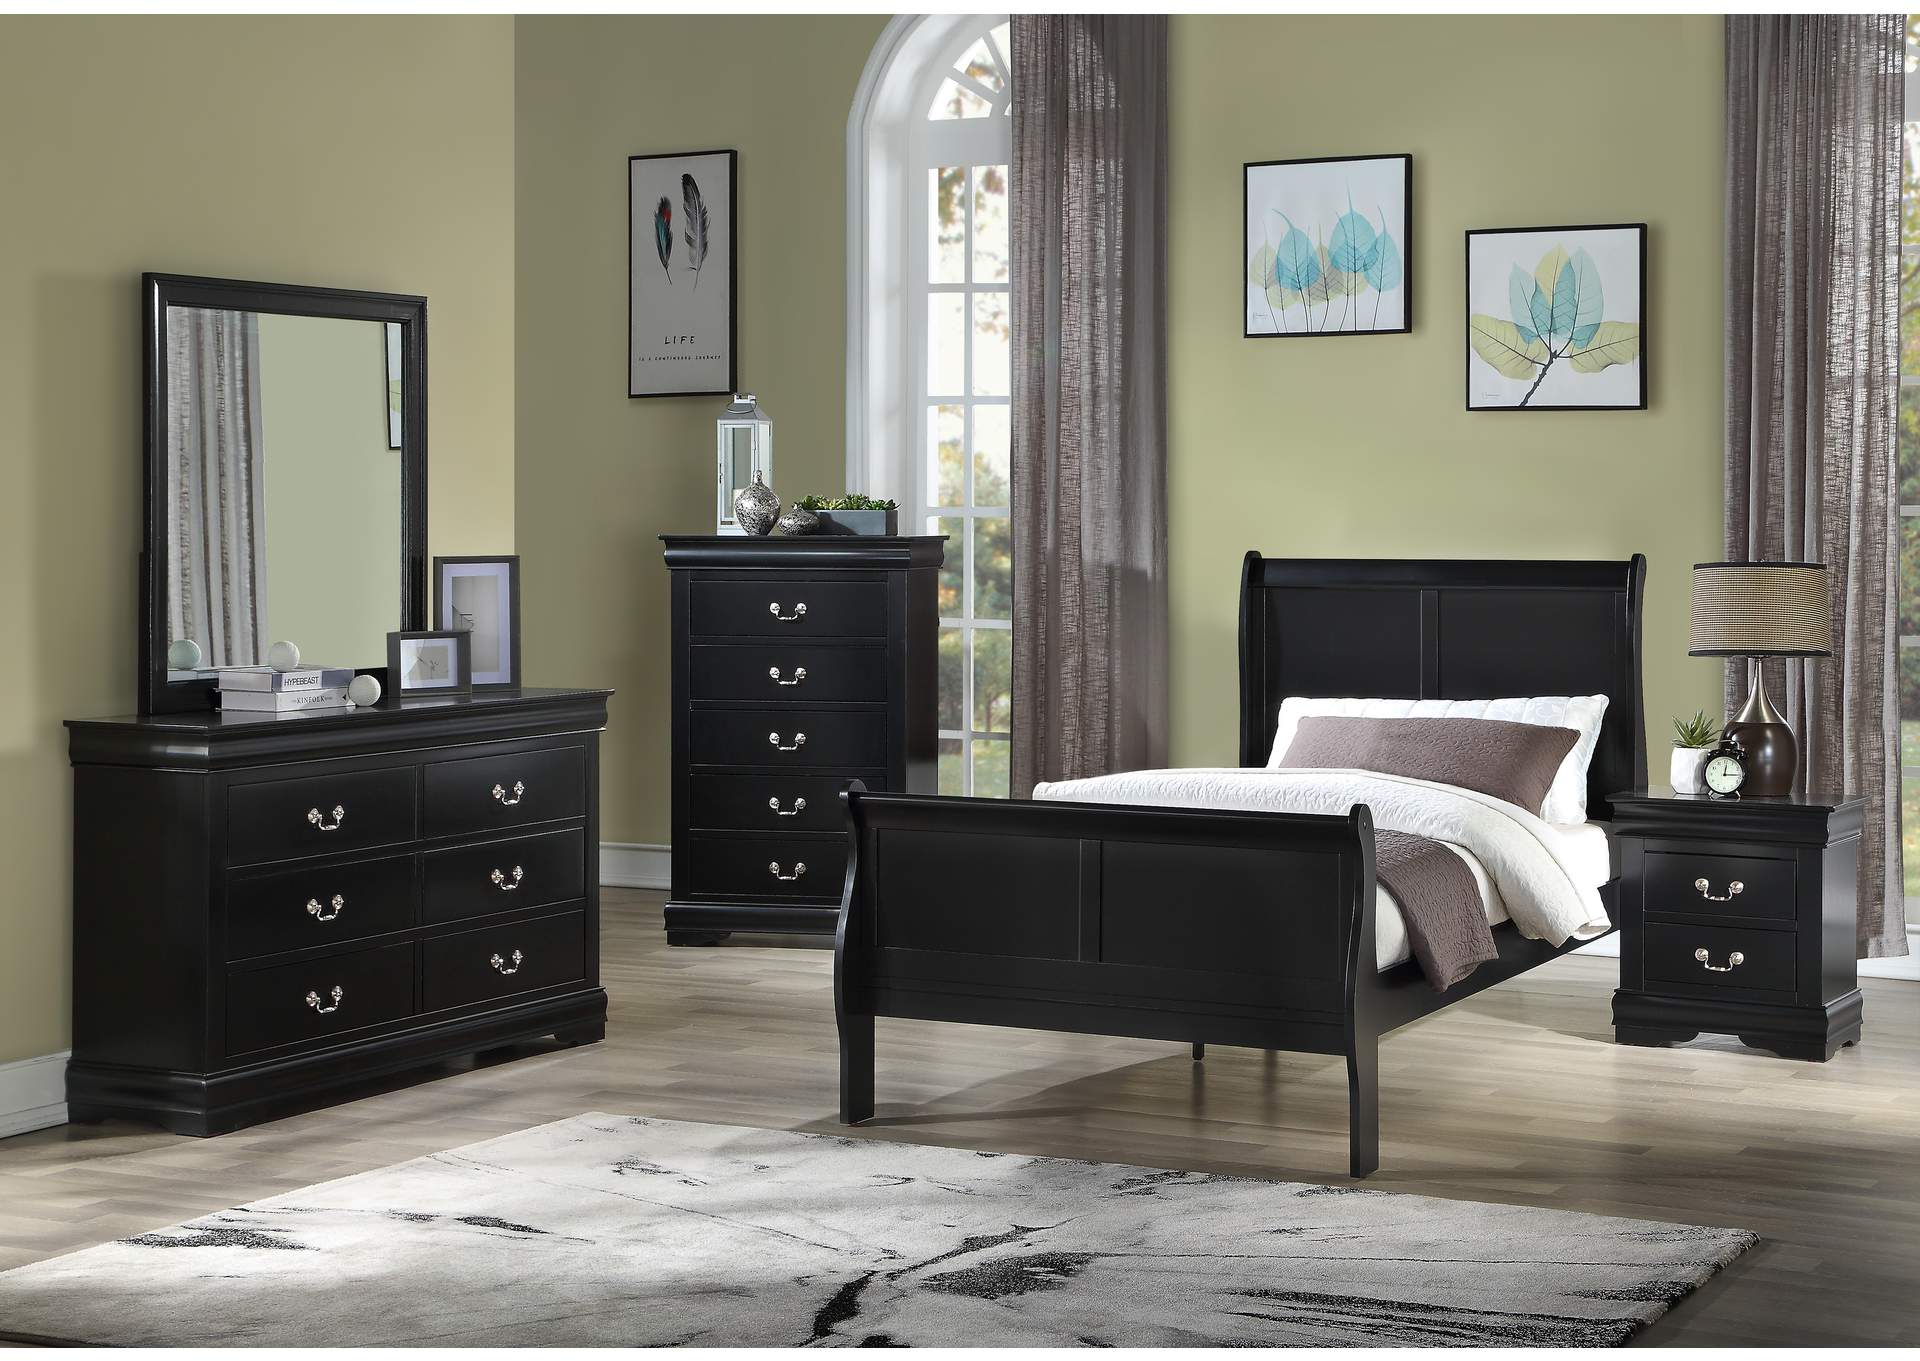 Louis Philip Black Twin Bed W/ Dresser, Mirror, Nightstand, Chest,Crown Mark